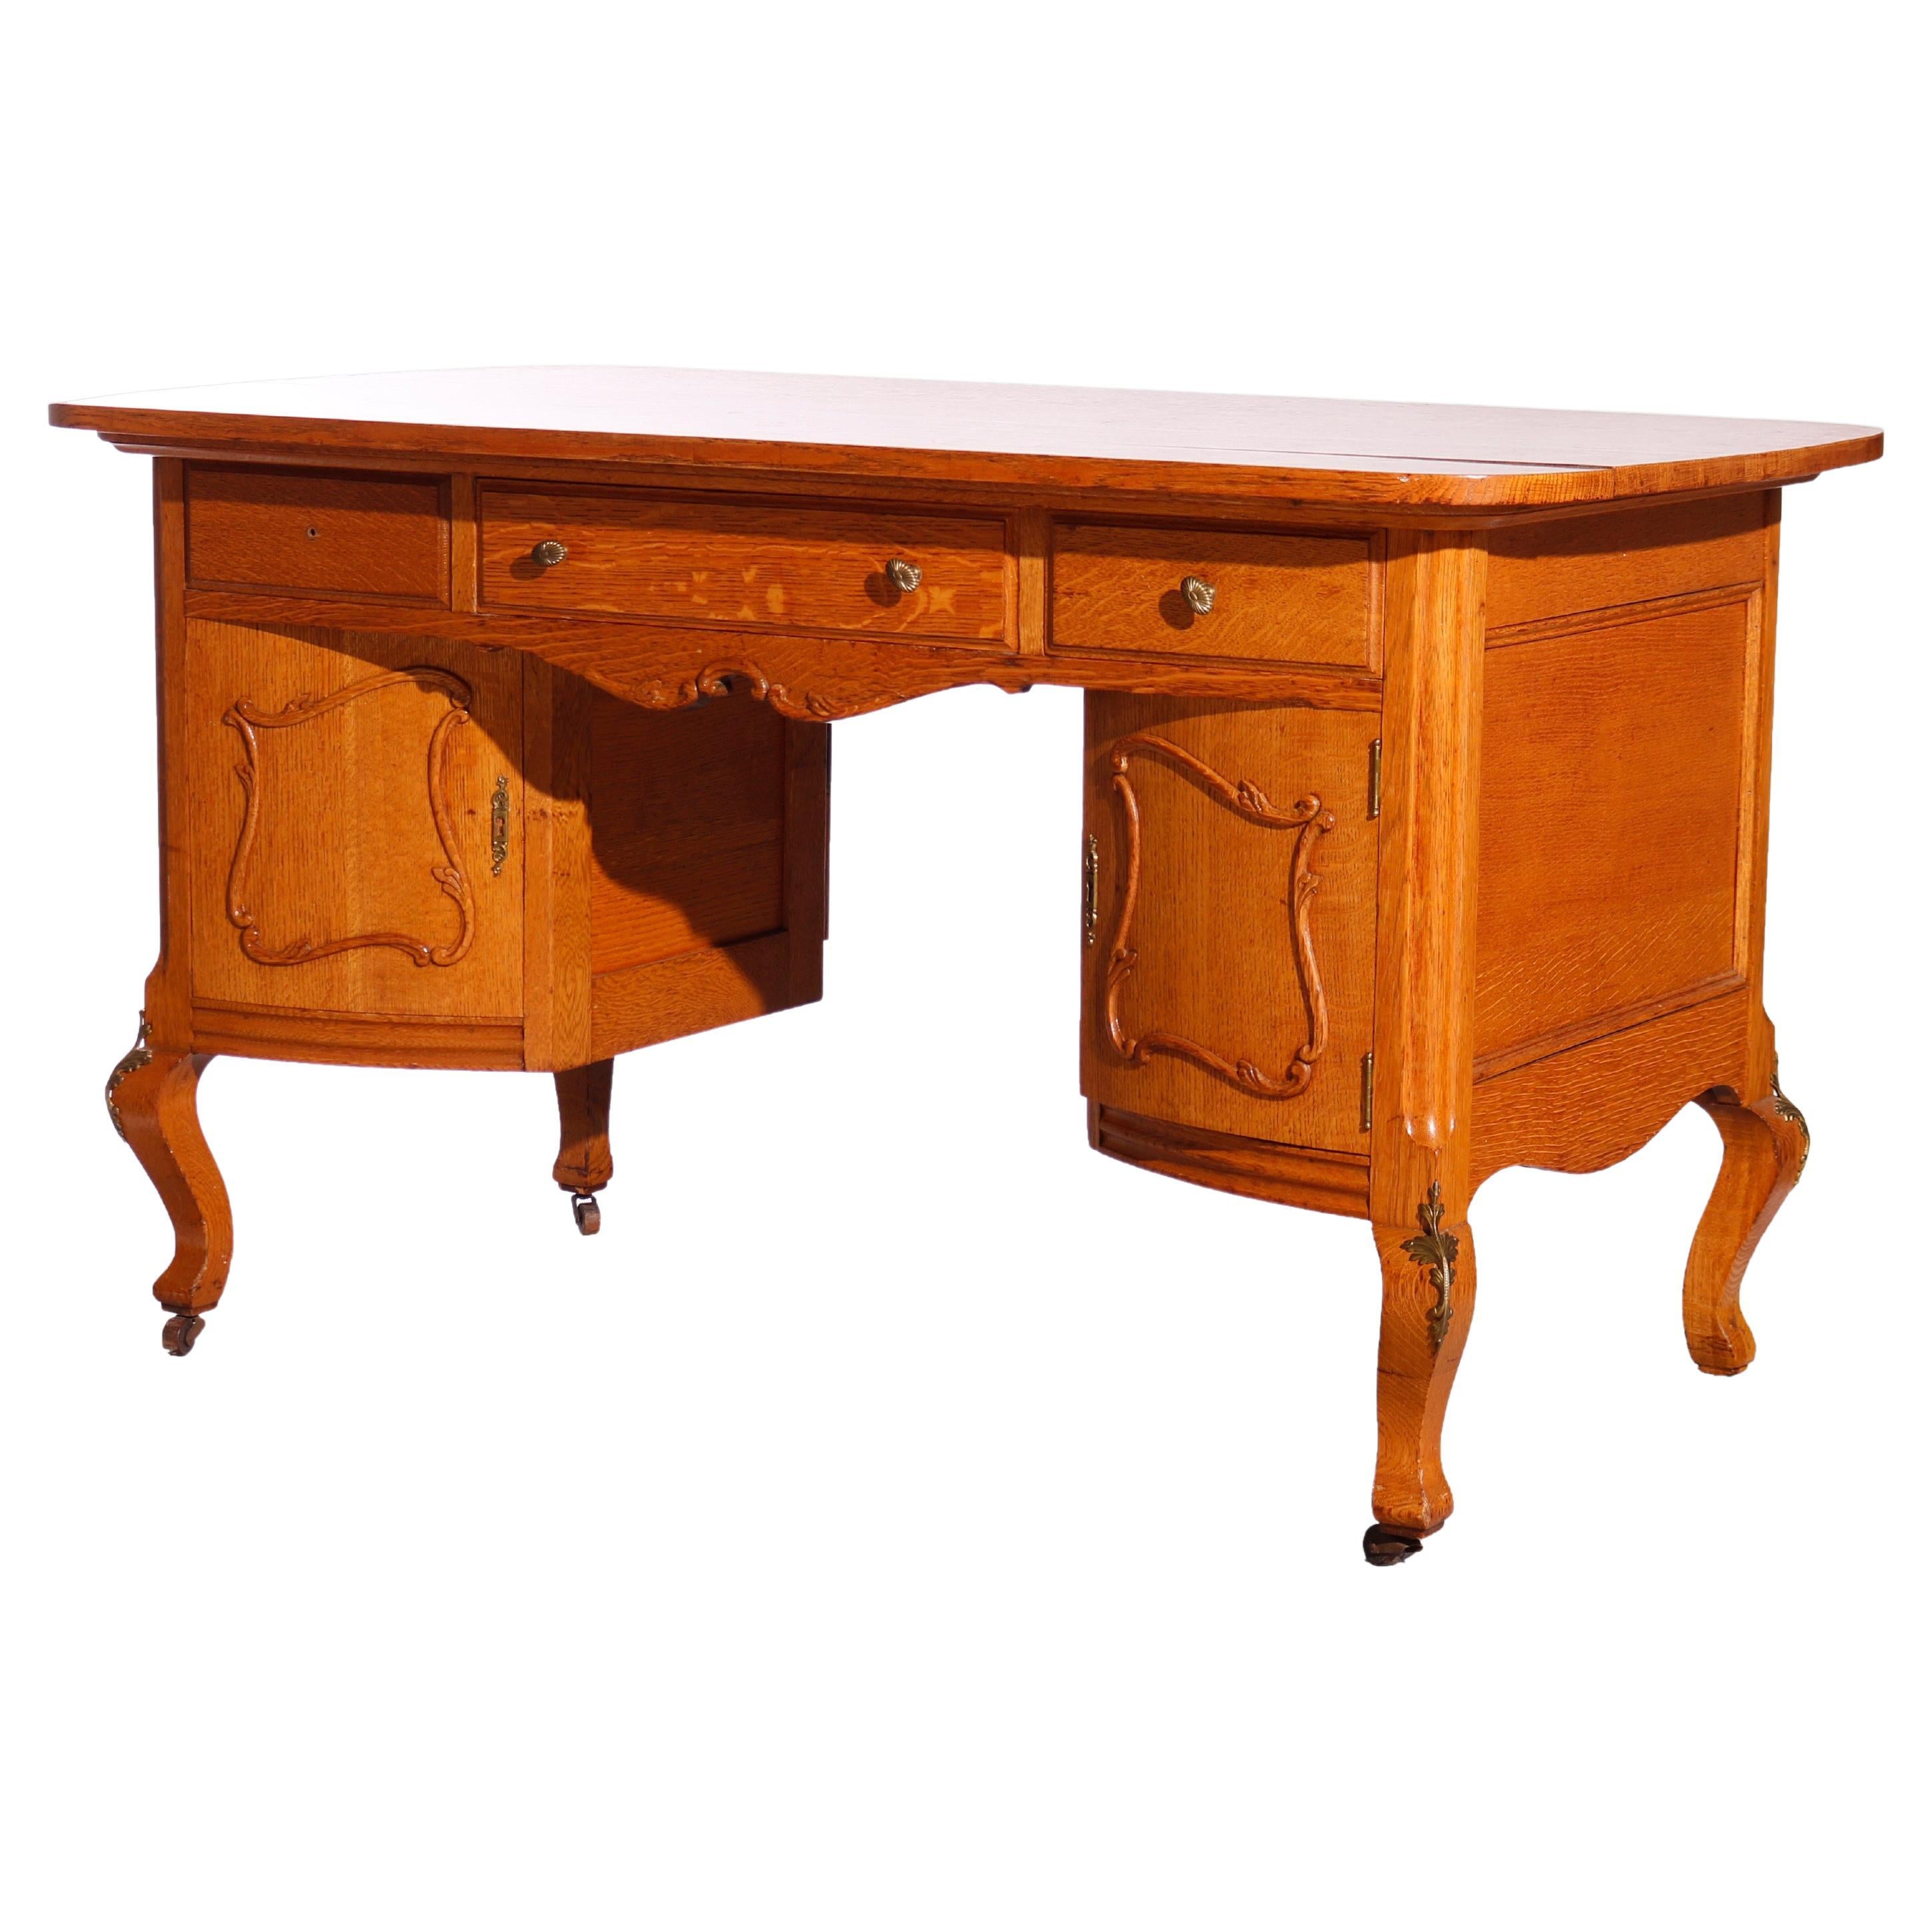 Antique RJ Horner Carved Oak Partners Desk circa 1900